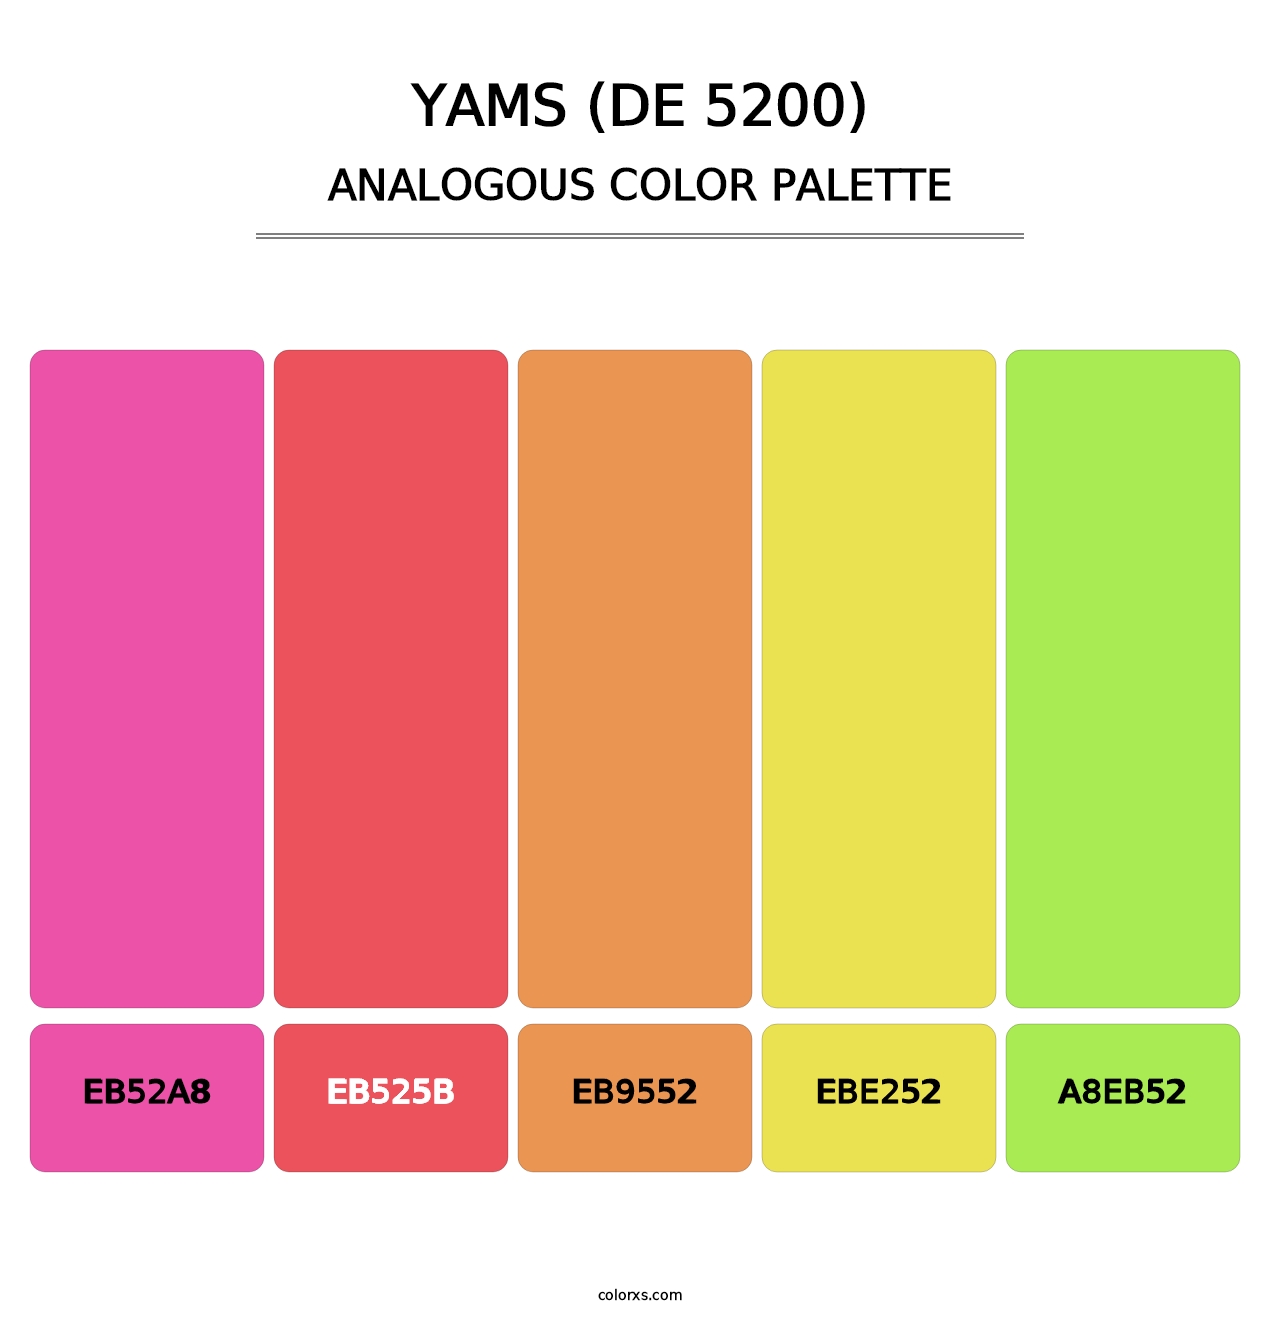 Yams (DE 5200) - Analogous Color Palette